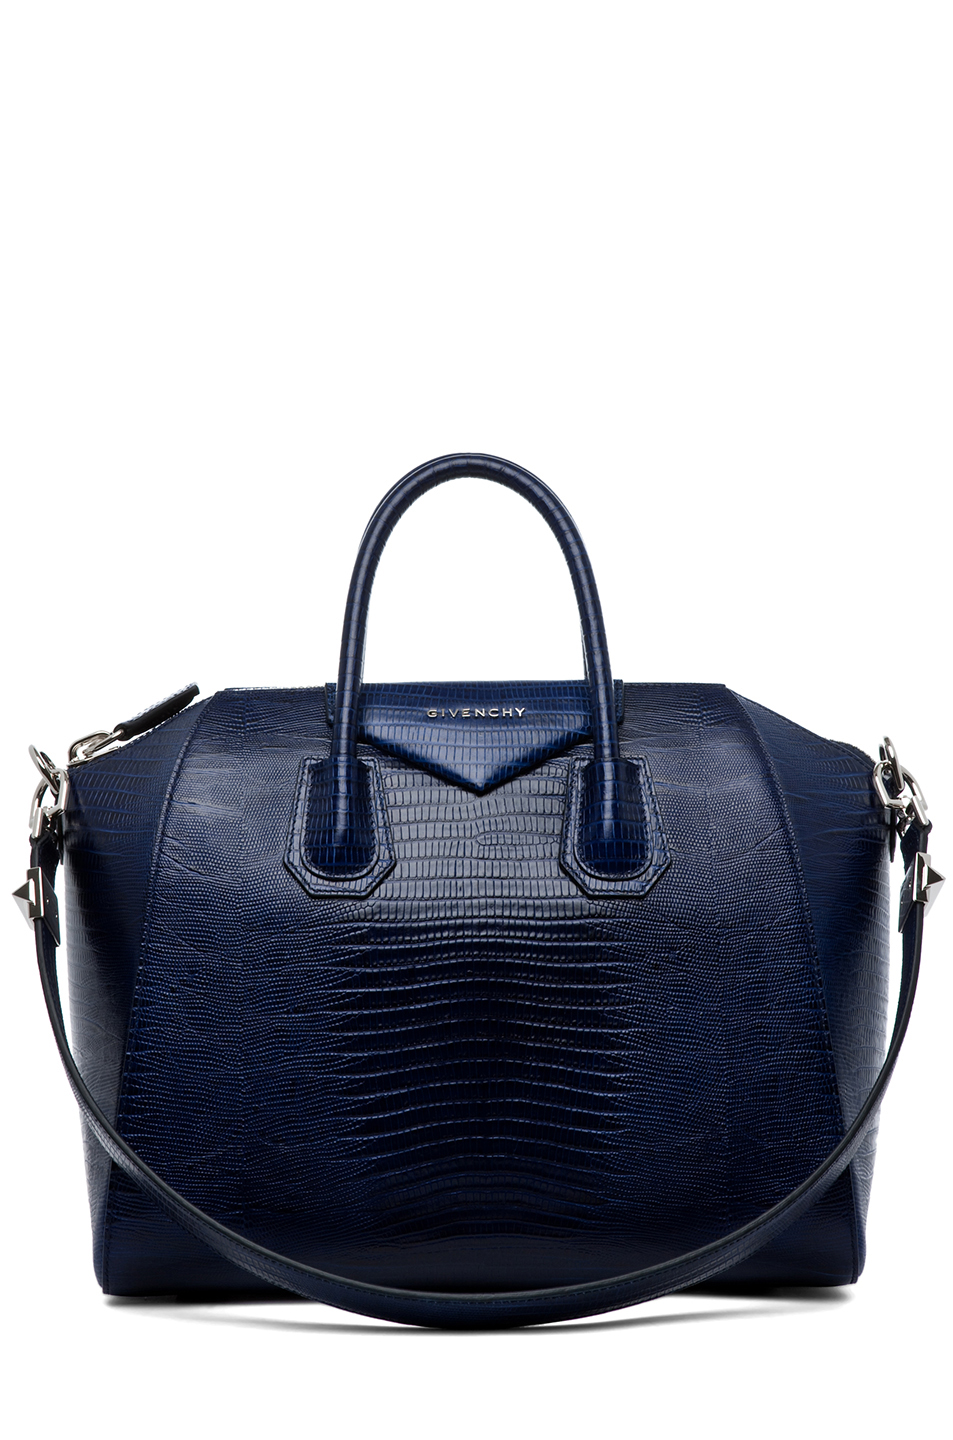 Celebrities and Their Givenchy Antigona Bags: A Retrospective - PurseBlog